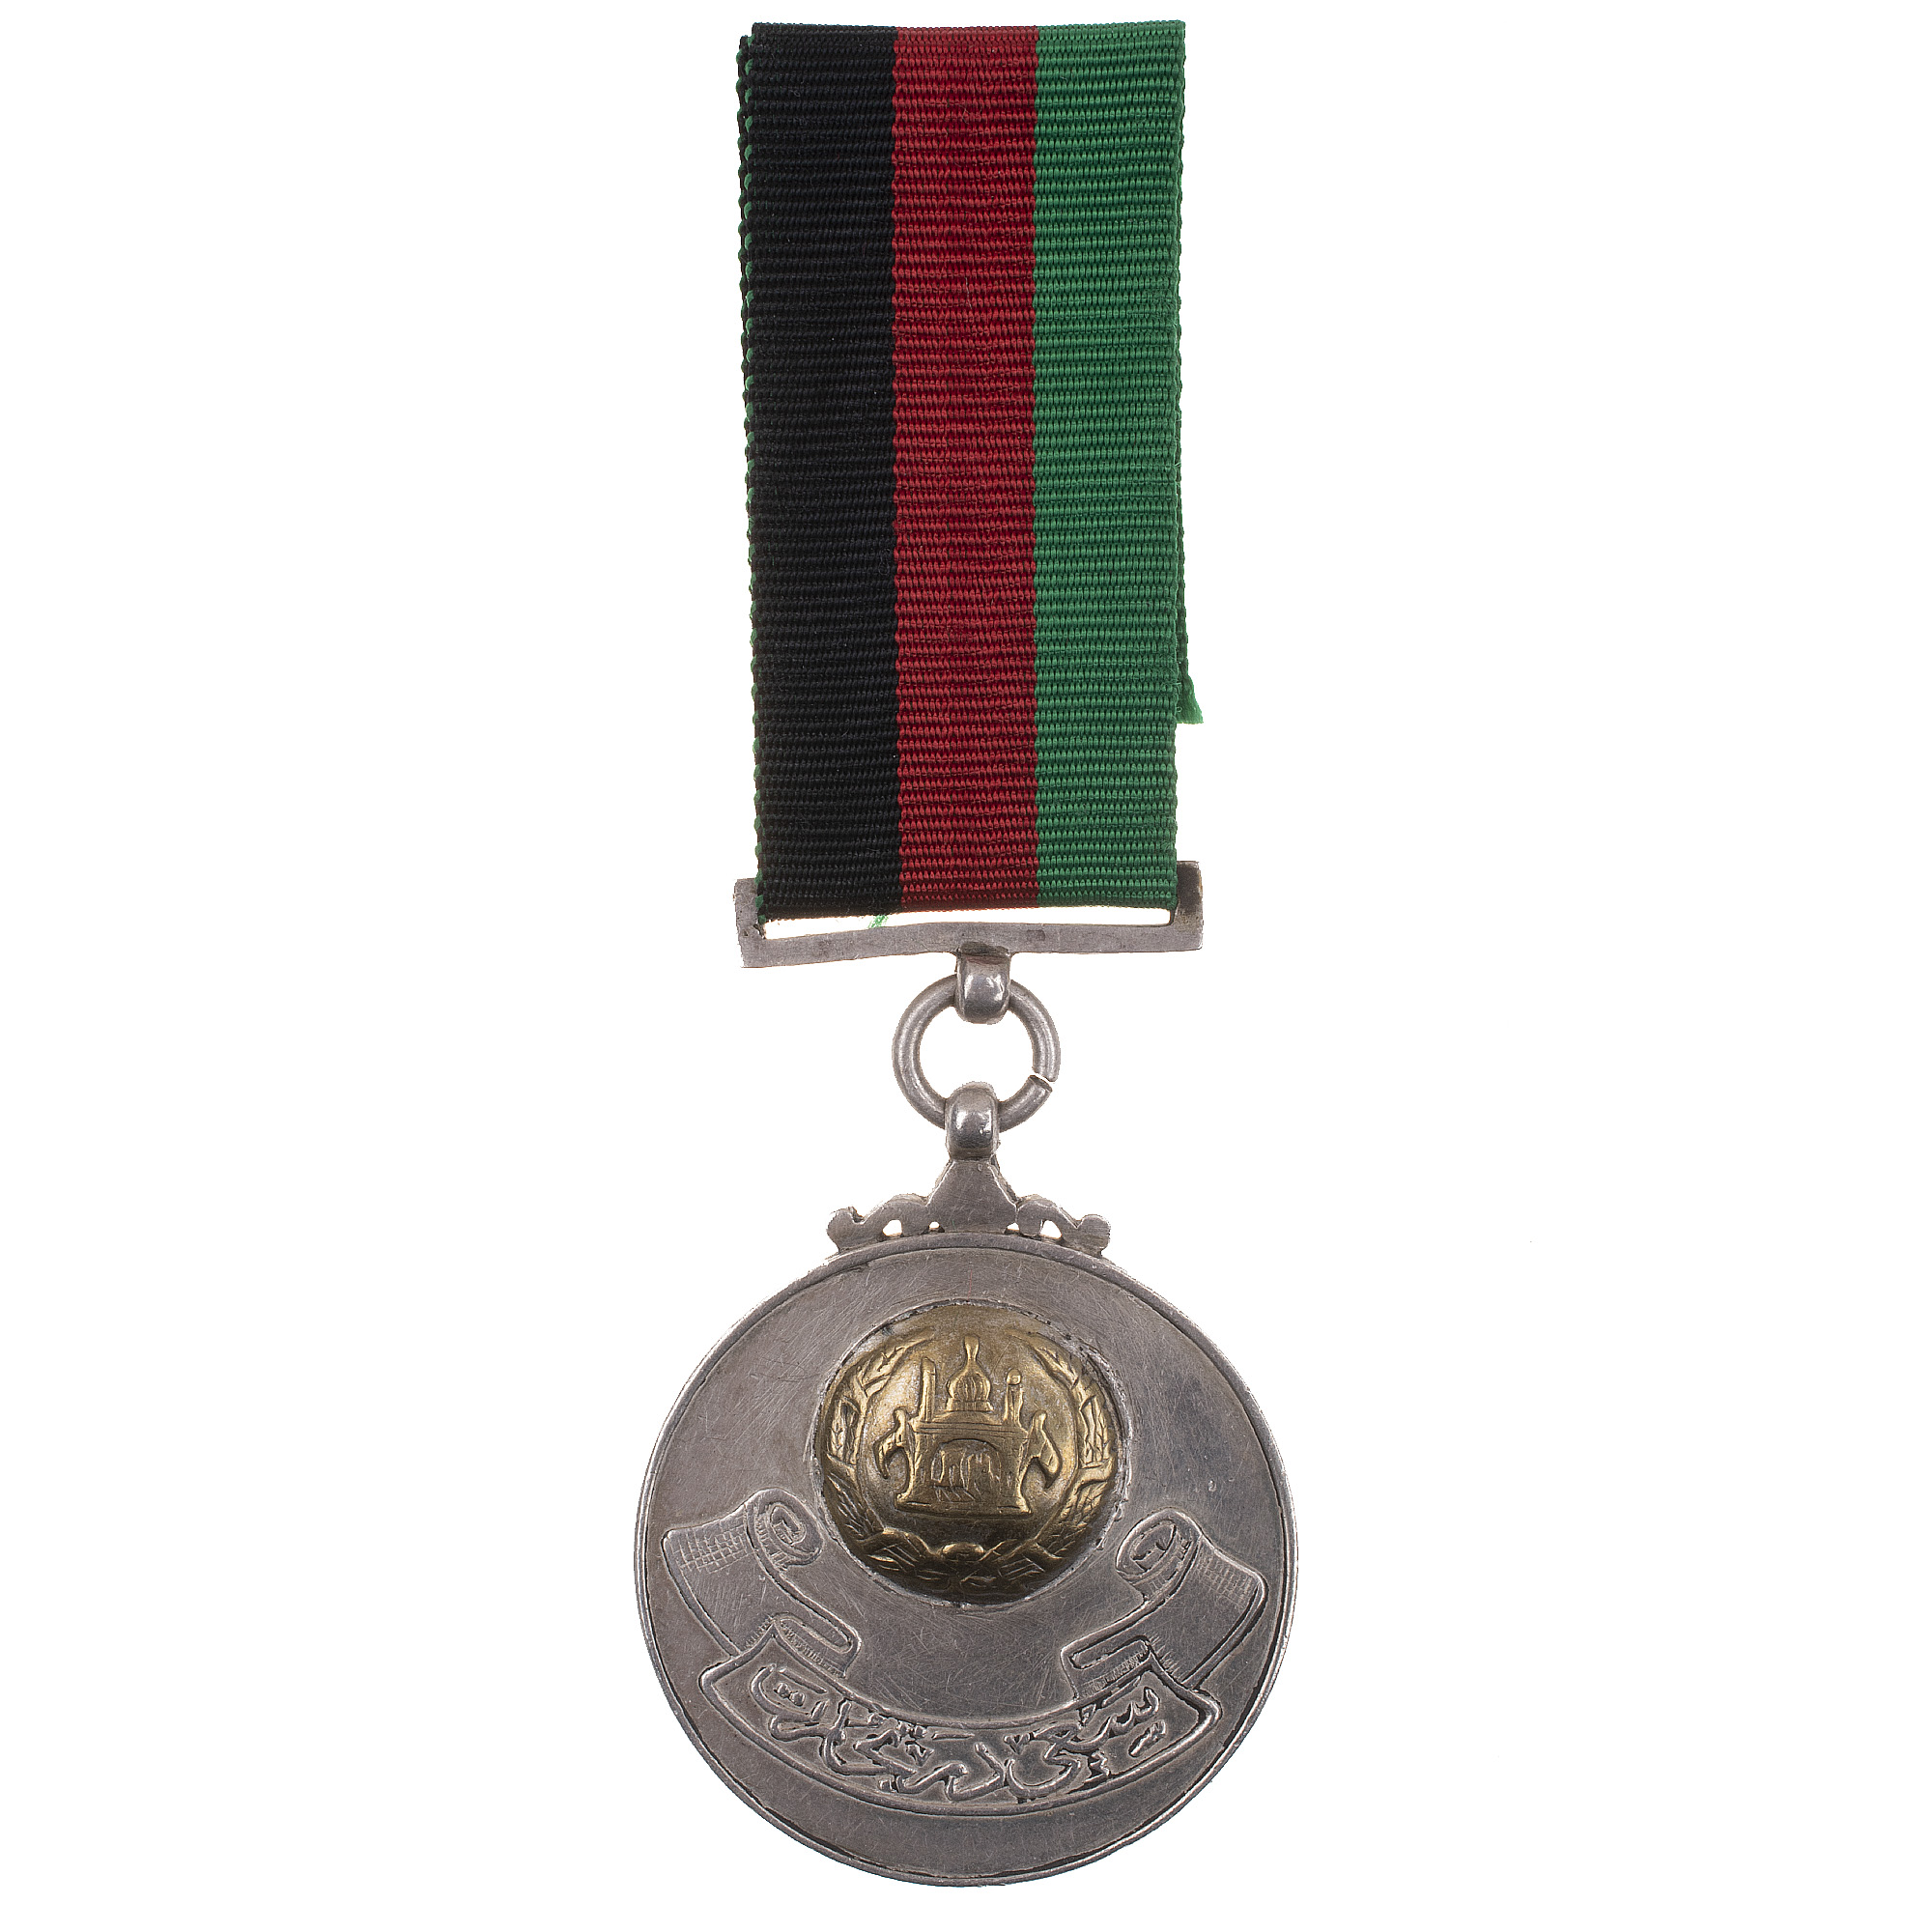 Афганистан. Медаль "За Заслуги".